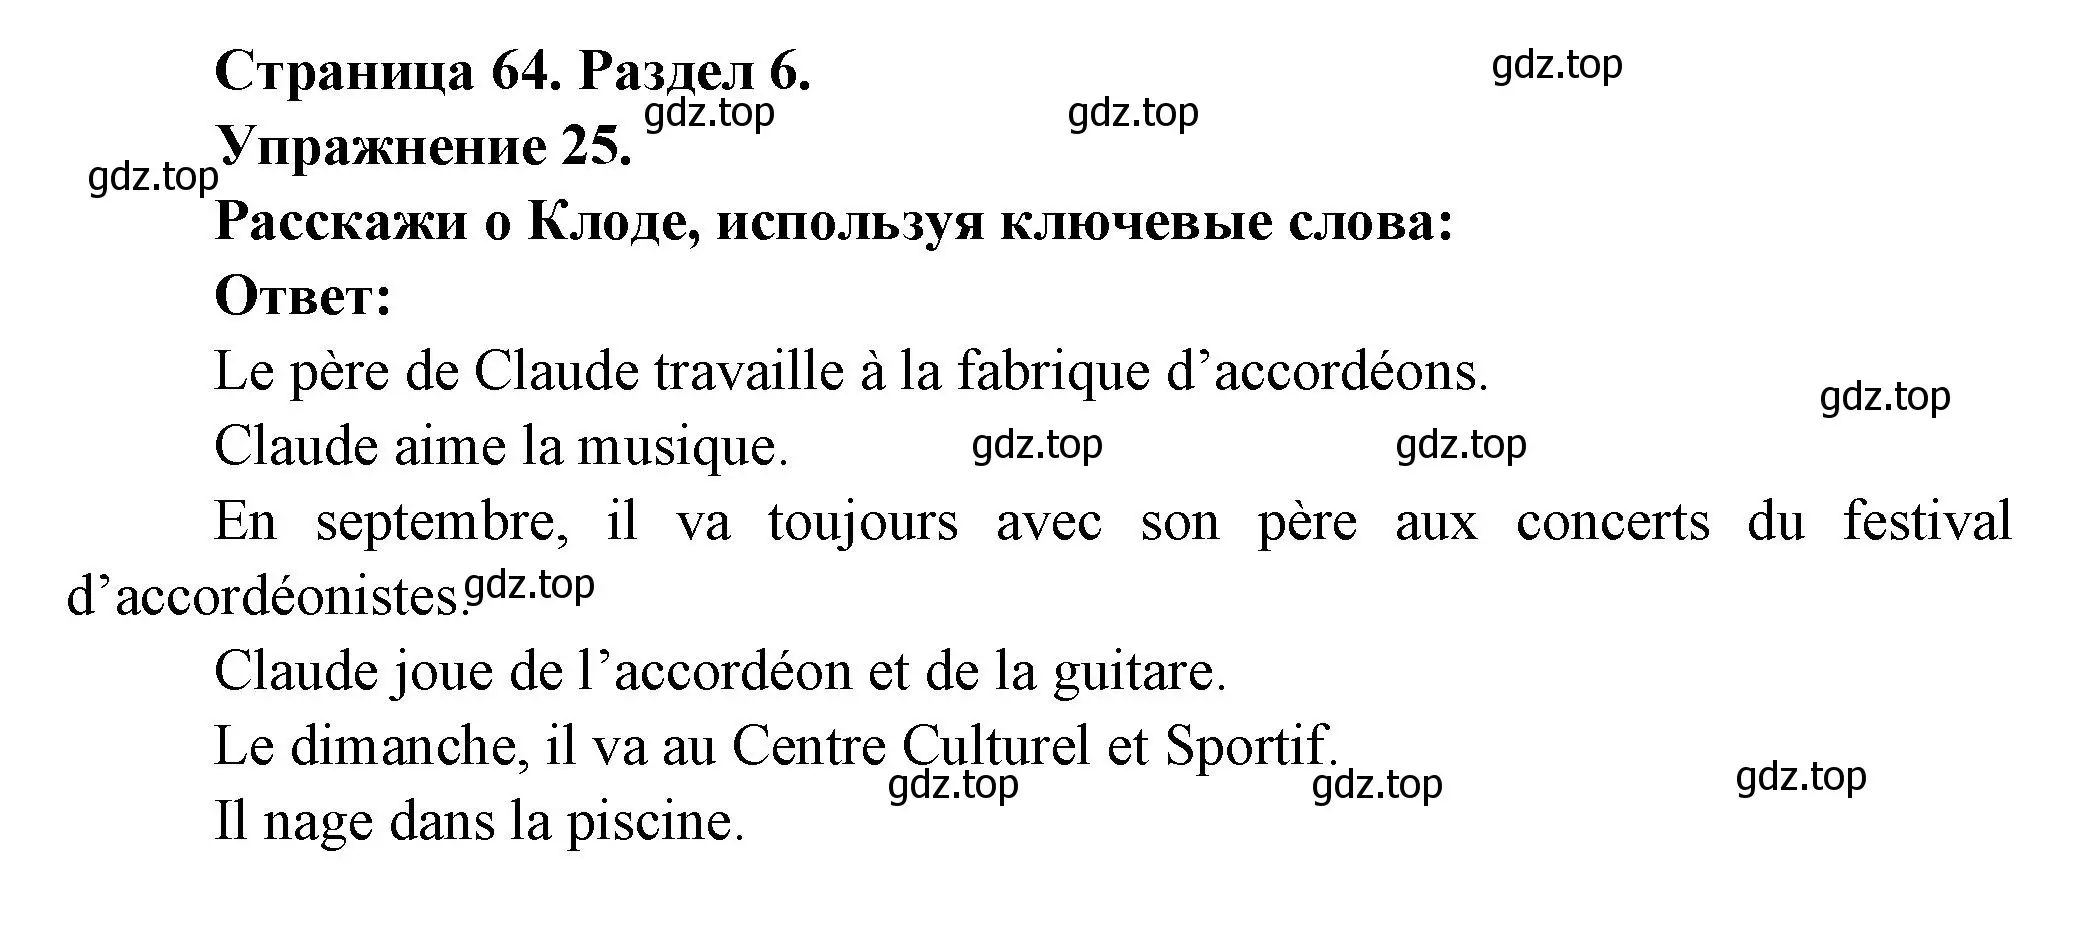 Решение номер 25 (страница 64) гдз по французскому языку 5 класс Береговская, Белосельская, учебник 2 часть